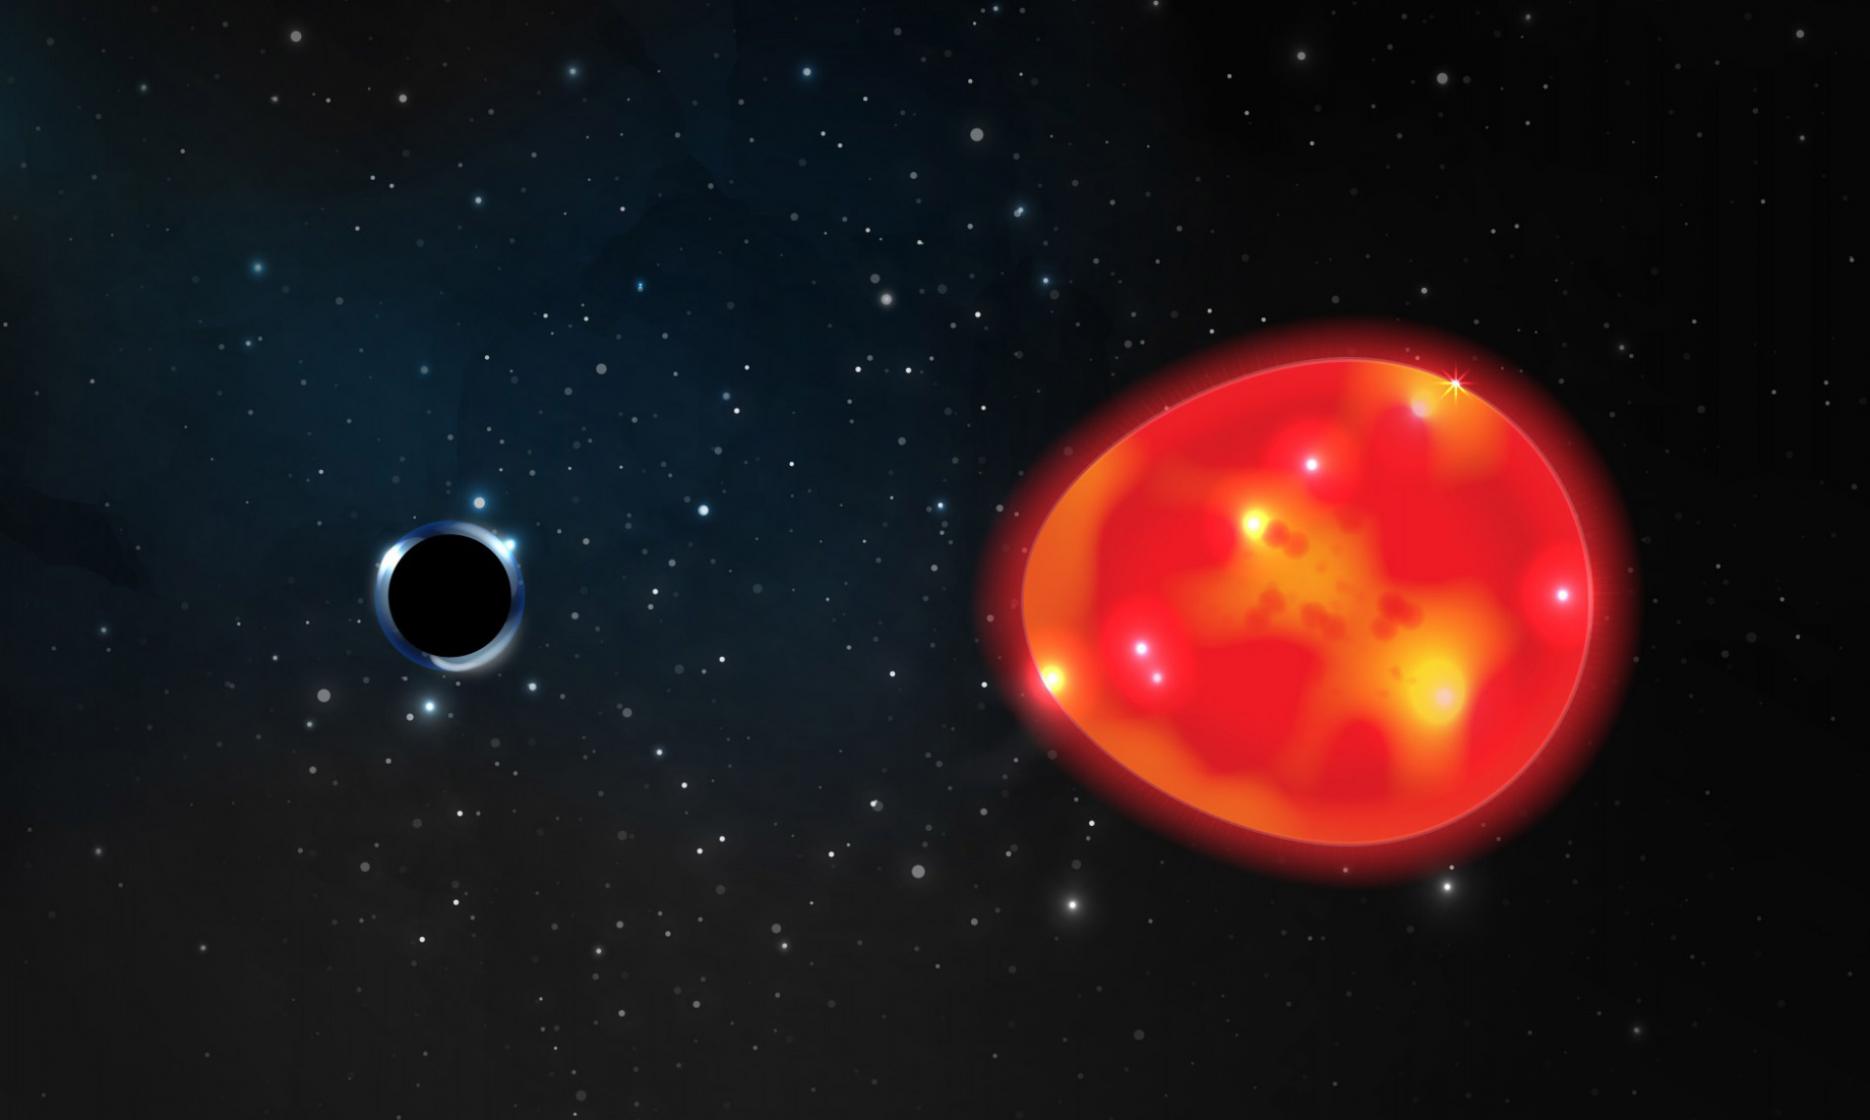 距离太阳系1500光年的红巨星V723 Mon亮度改变是双星系统的另一部分是个小型黑洞